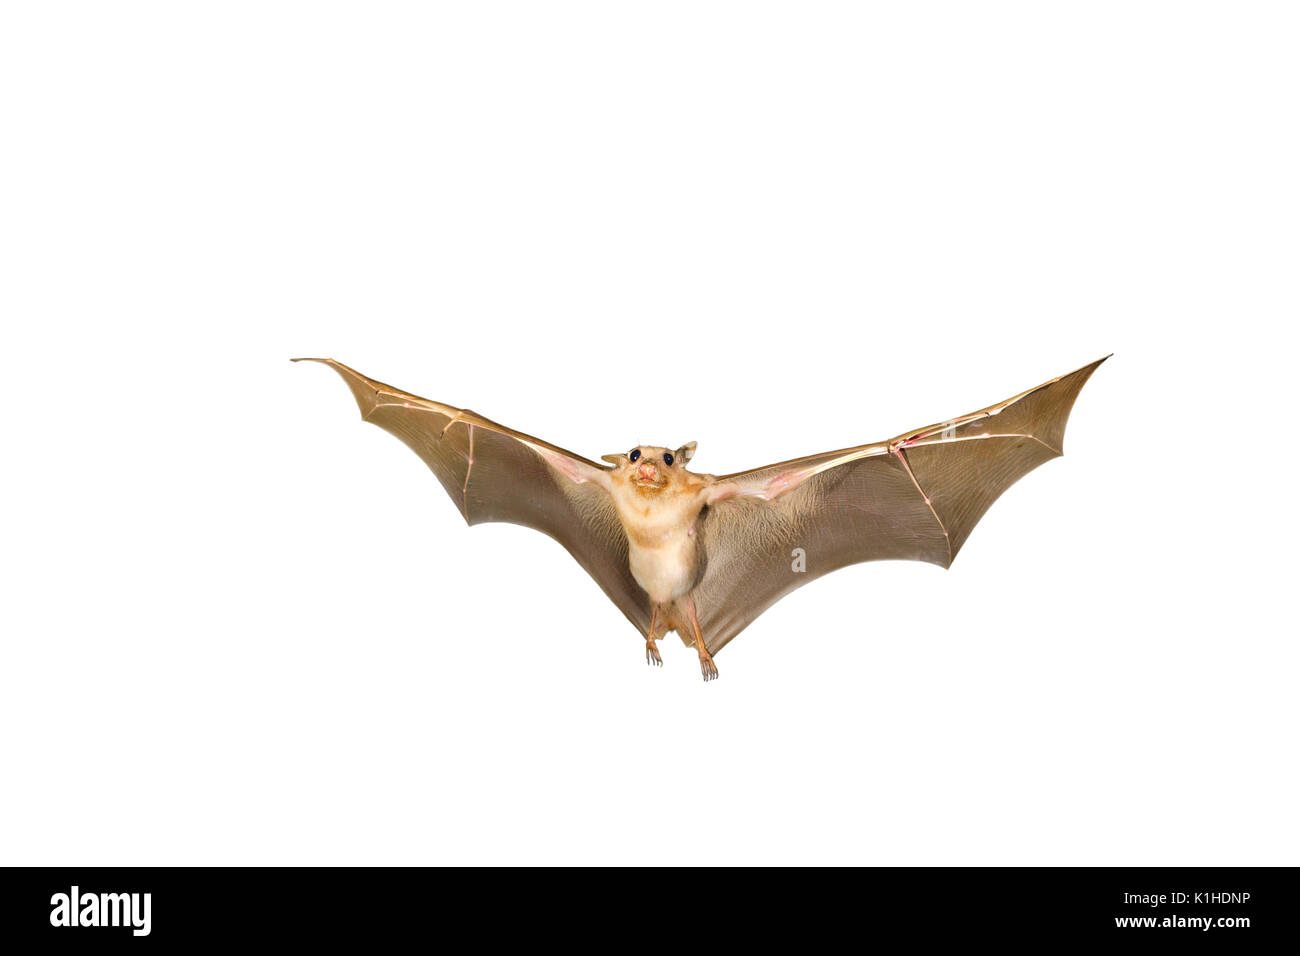 Gambian epauletted fruit bat (Epomophorus gambianus) flying, isolated on white background. Stock Photo